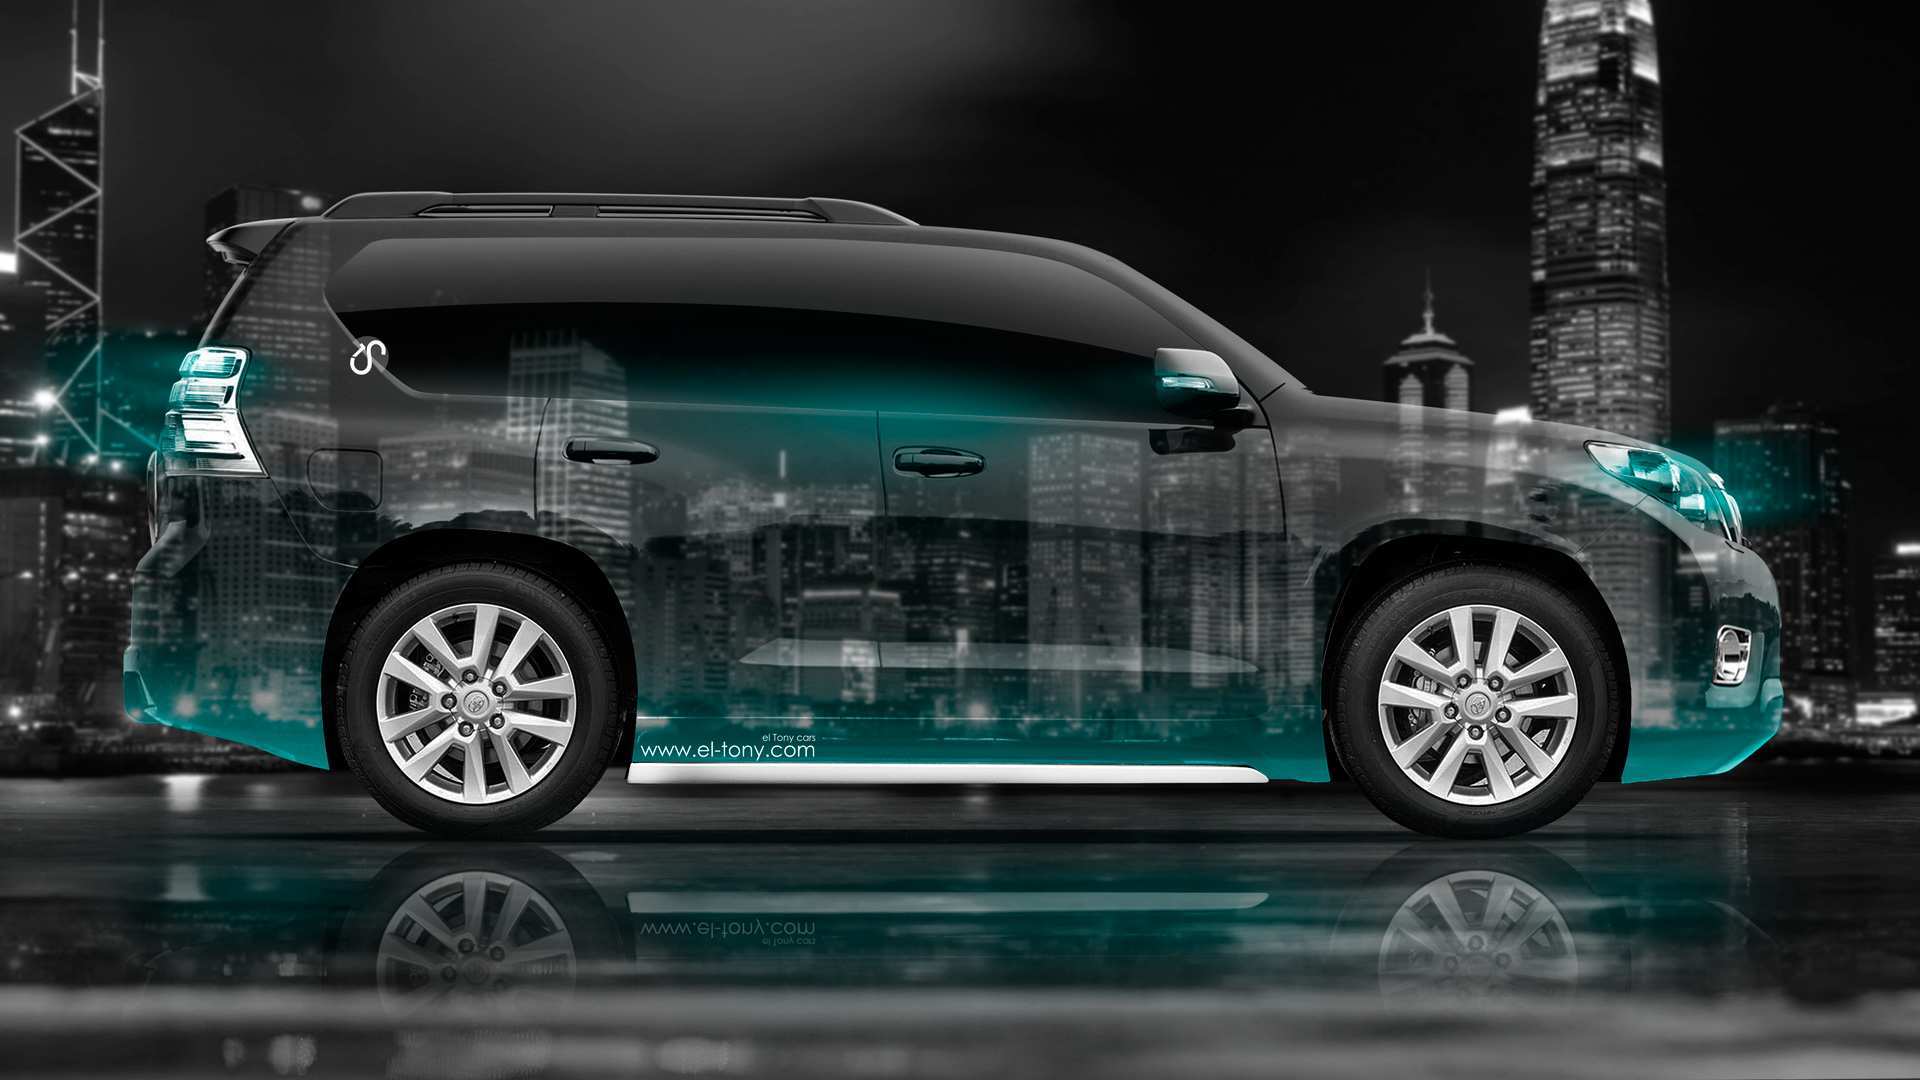 2020 Toyota Land Cruiser 200 , HD Wallpaper & Backgrounds